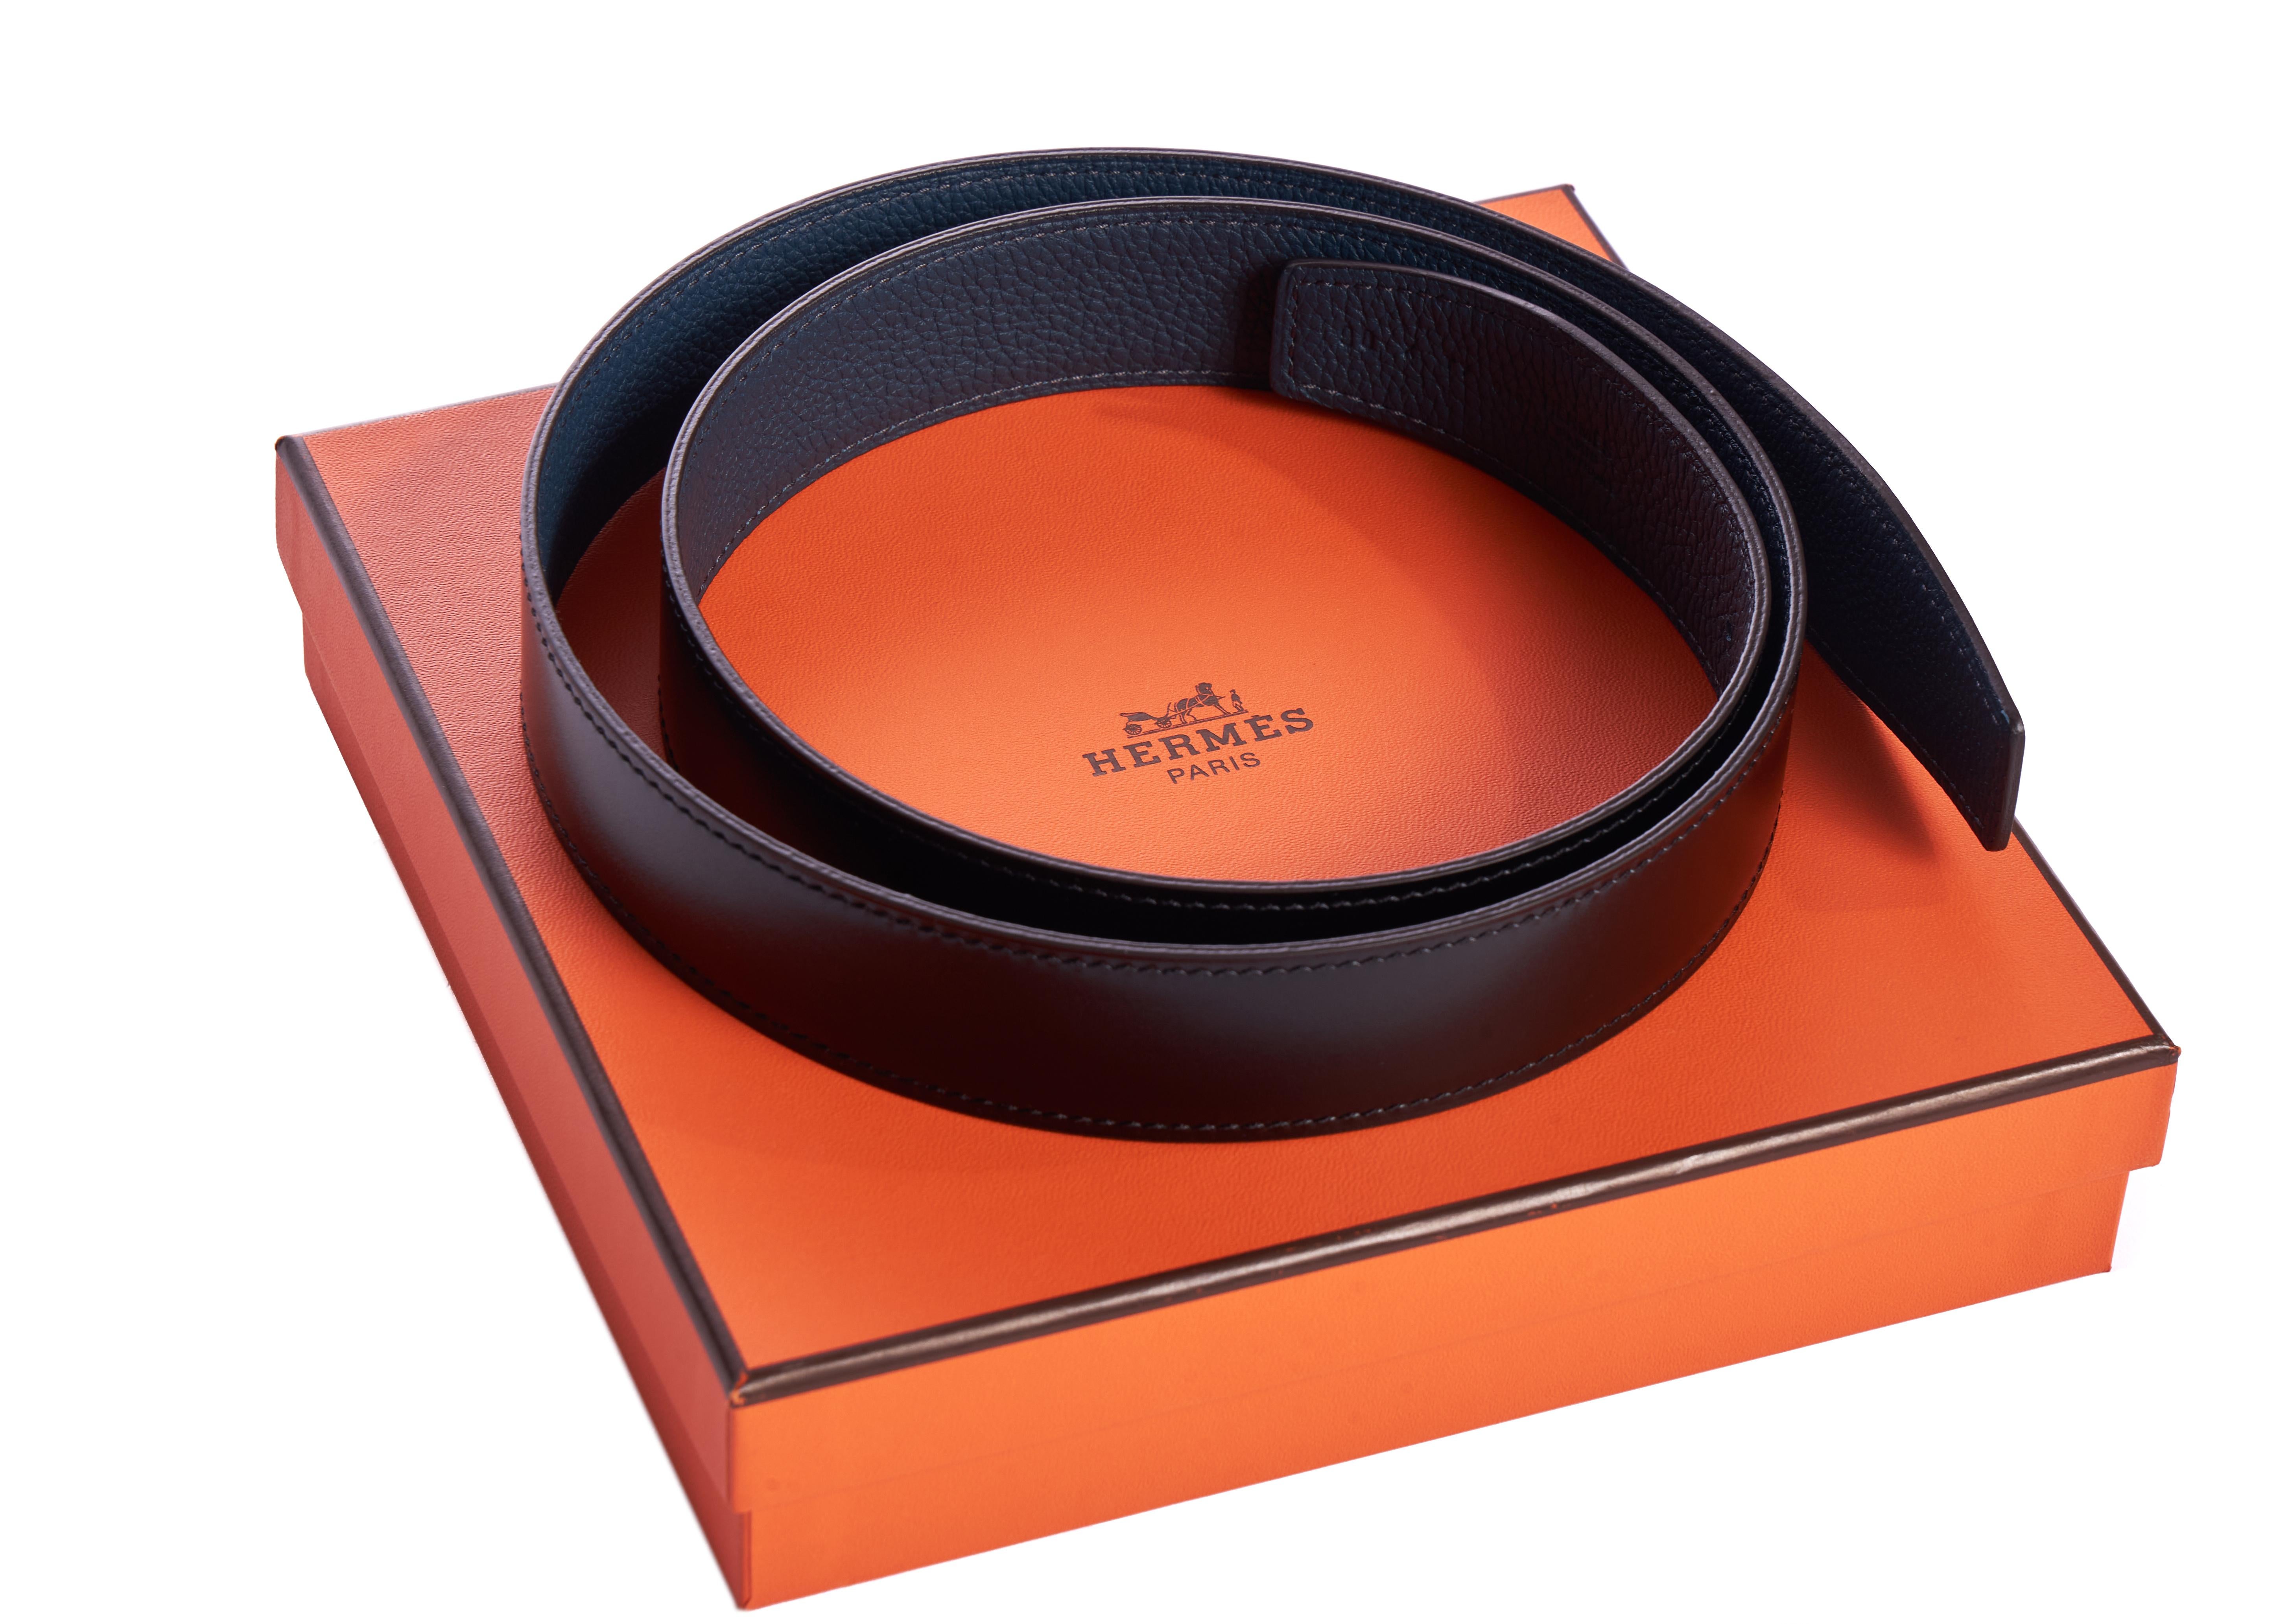 Hermès brandneue, limitierte Auflage des reversiblen Lederarmbands für den mittleren 32-mm-H-Gürtel. Schwarze Box aus Kalbsleder und blauem Togoleder. 90cm. Kommt mit Originalverpackung.